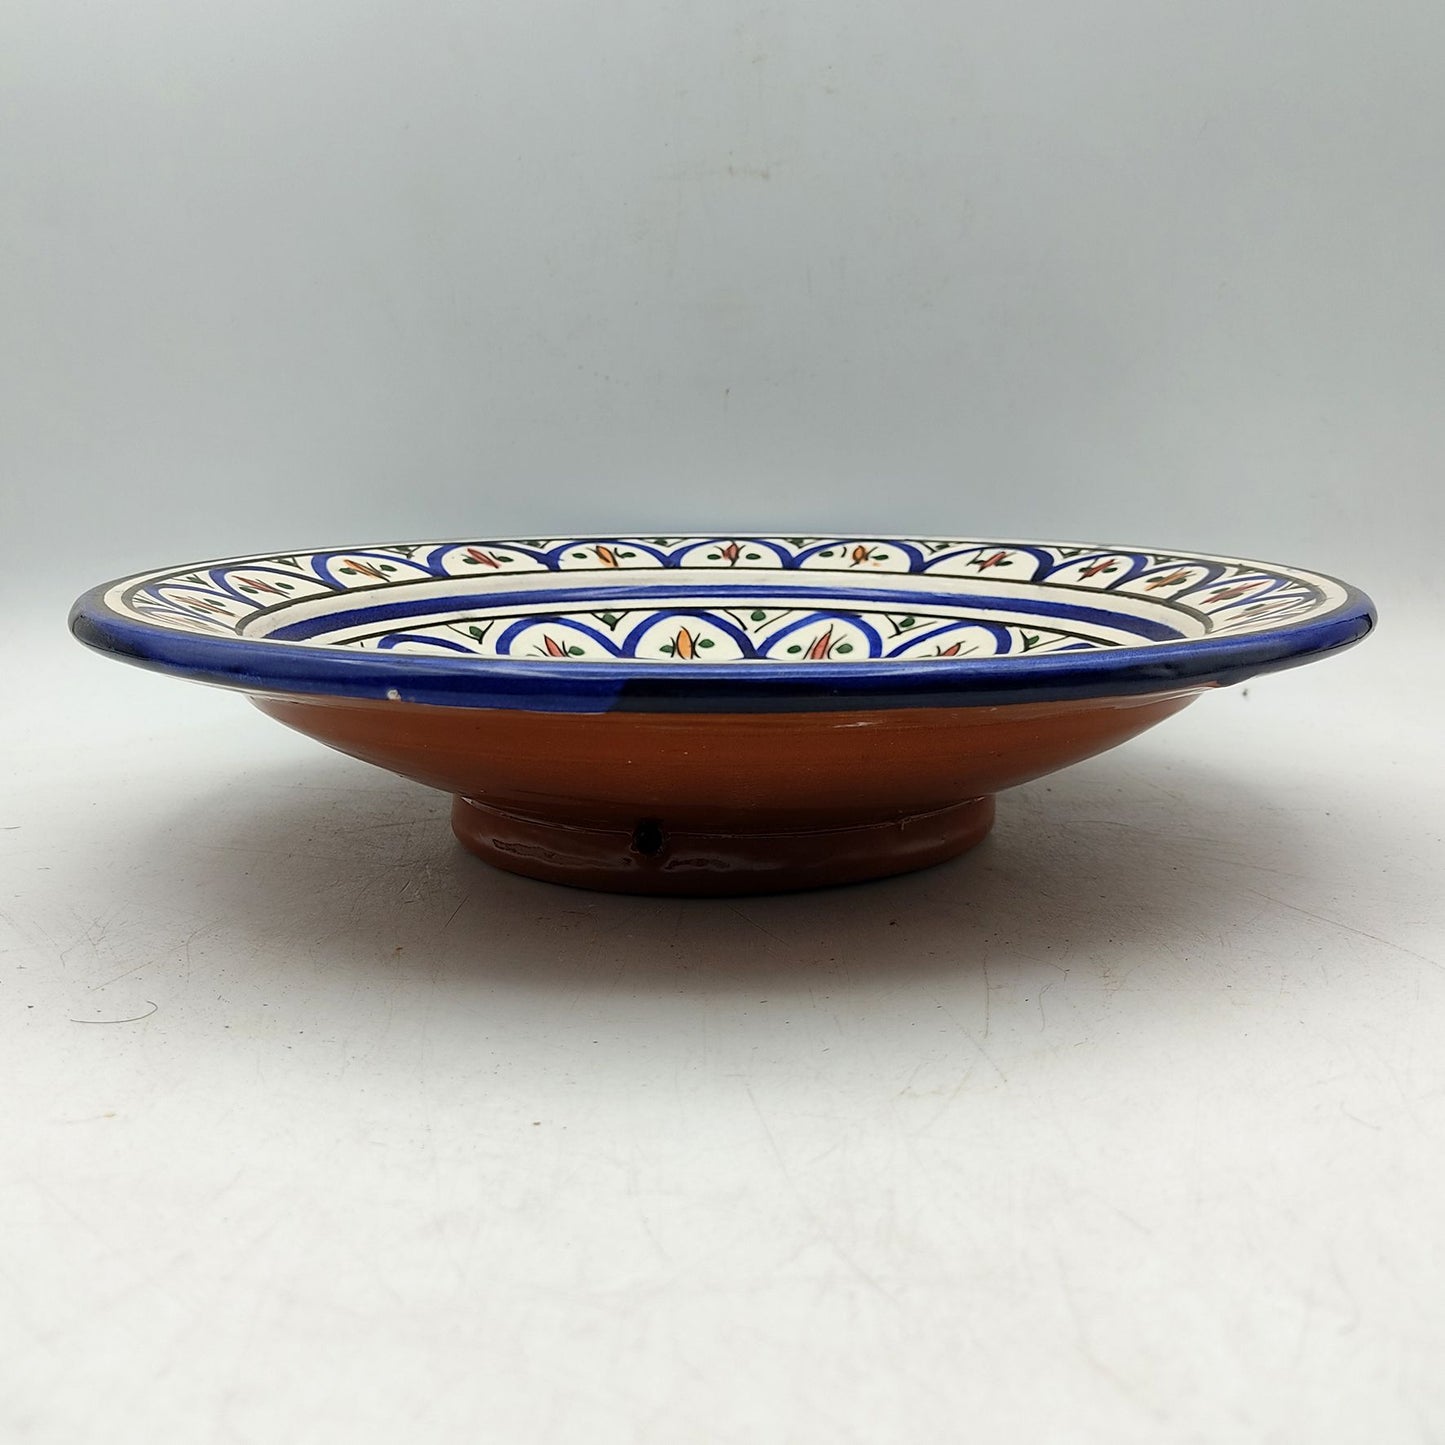 Piatto Ceramica Terracotta Parete Diam.27cm Etnico Marocchino Marocco 1101221054